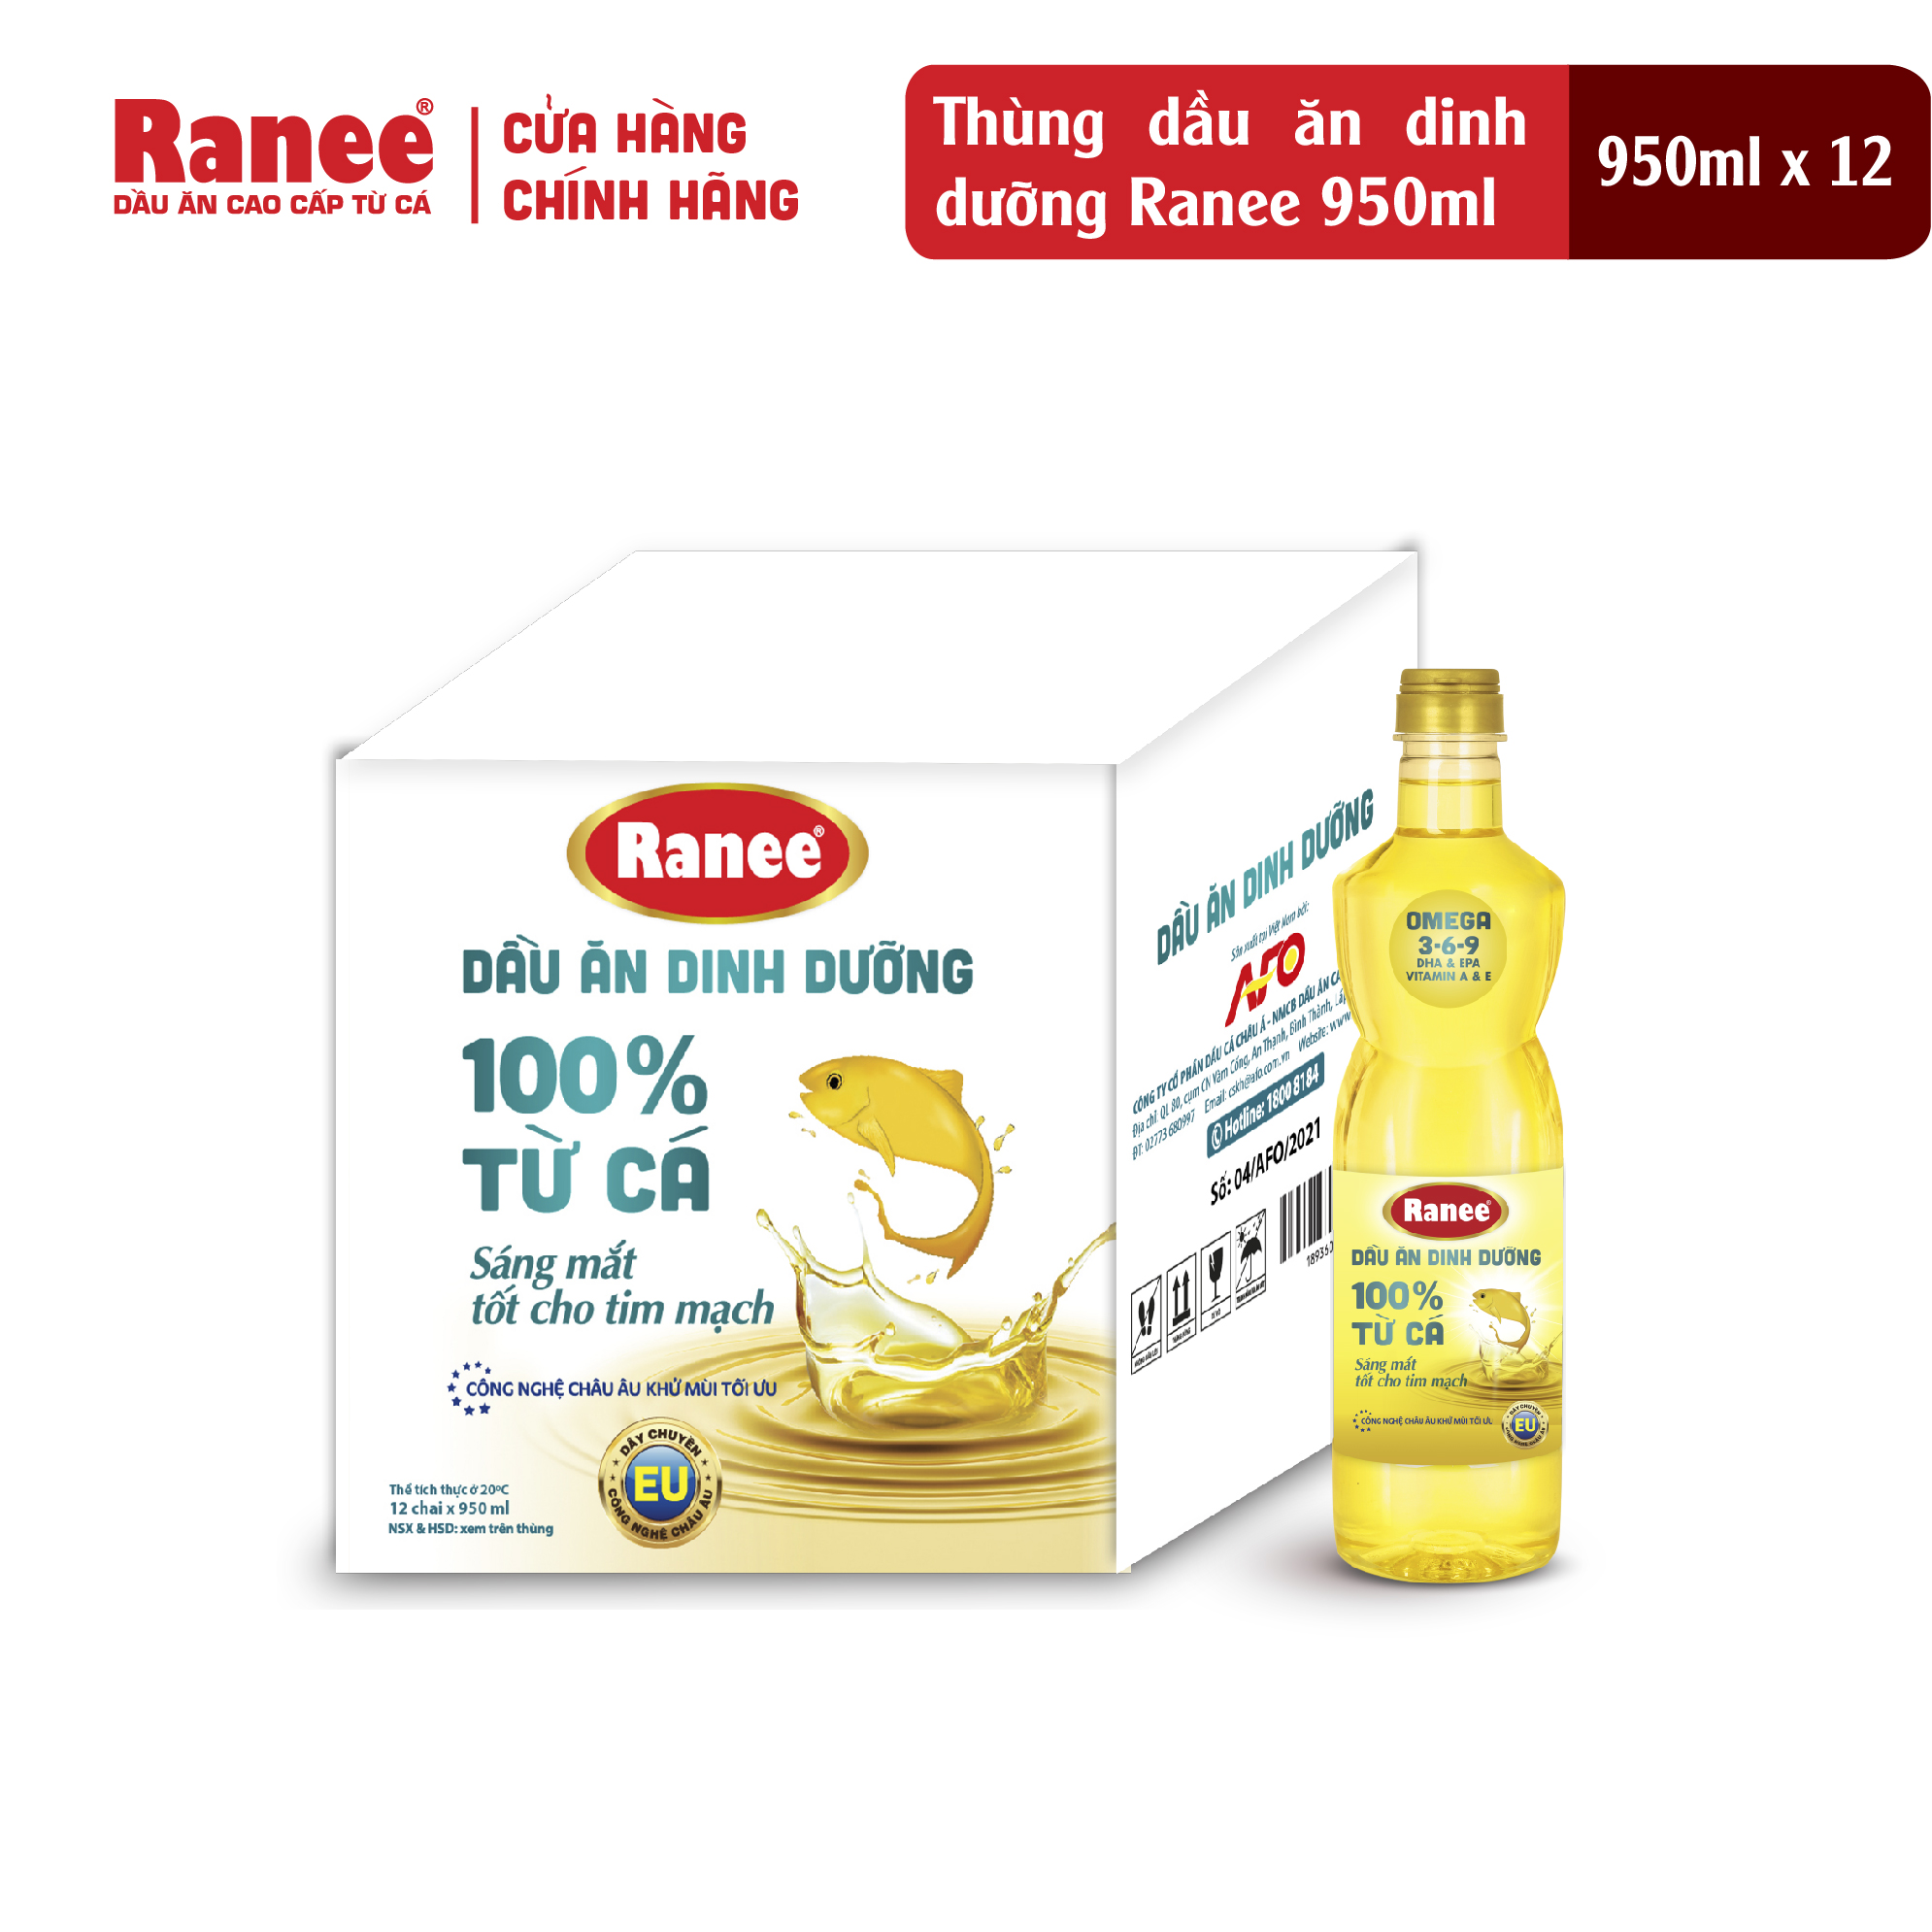 Thùng dầu ăn dinh dưỡng Ranee 950ml